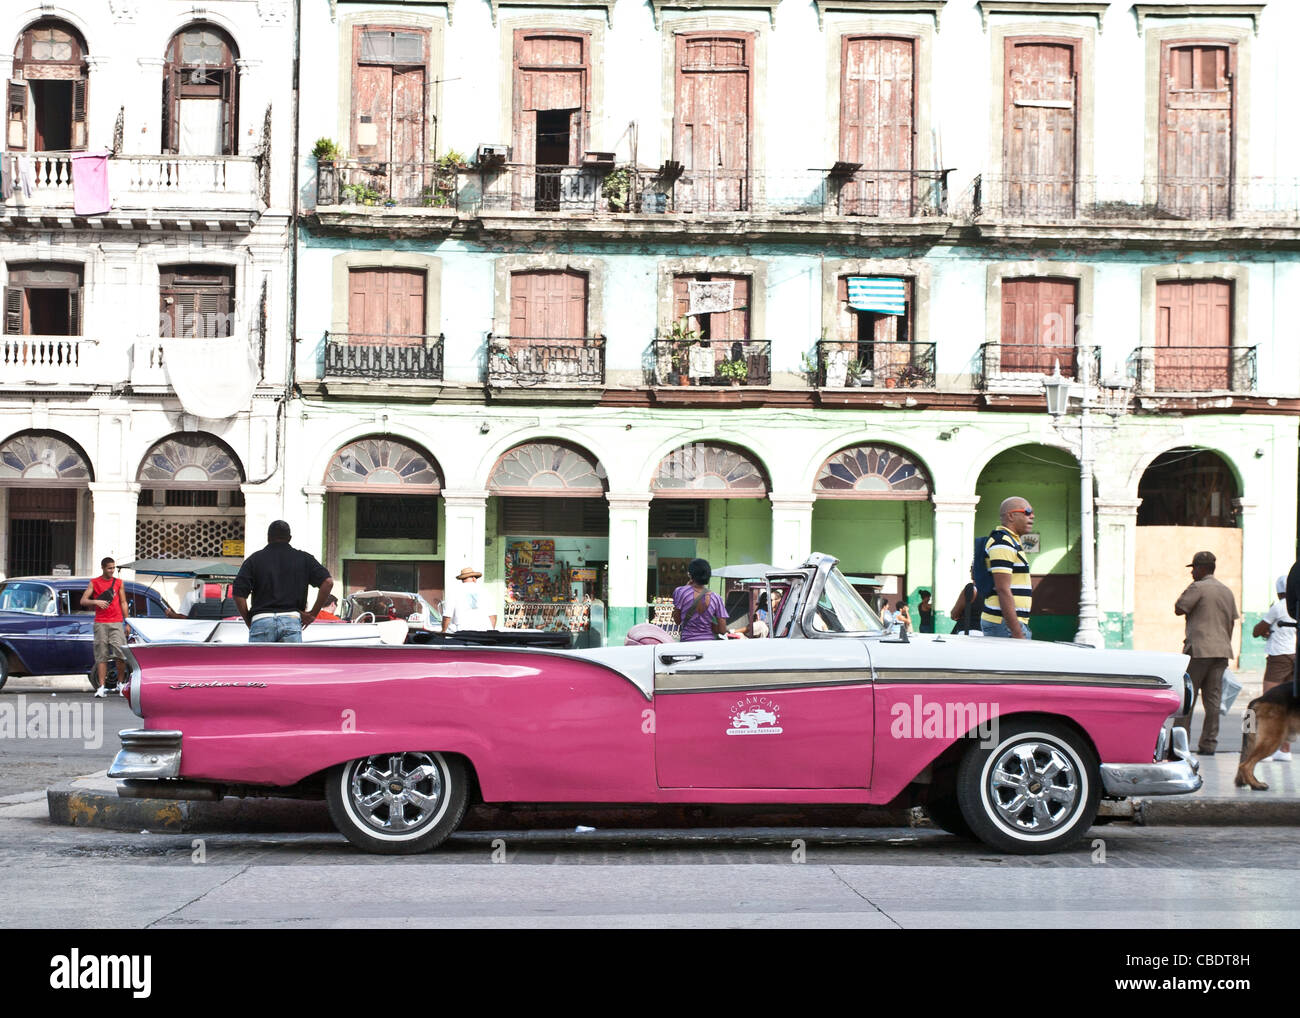 Pink vintage car dans une rue de La Havane Banque D'Images